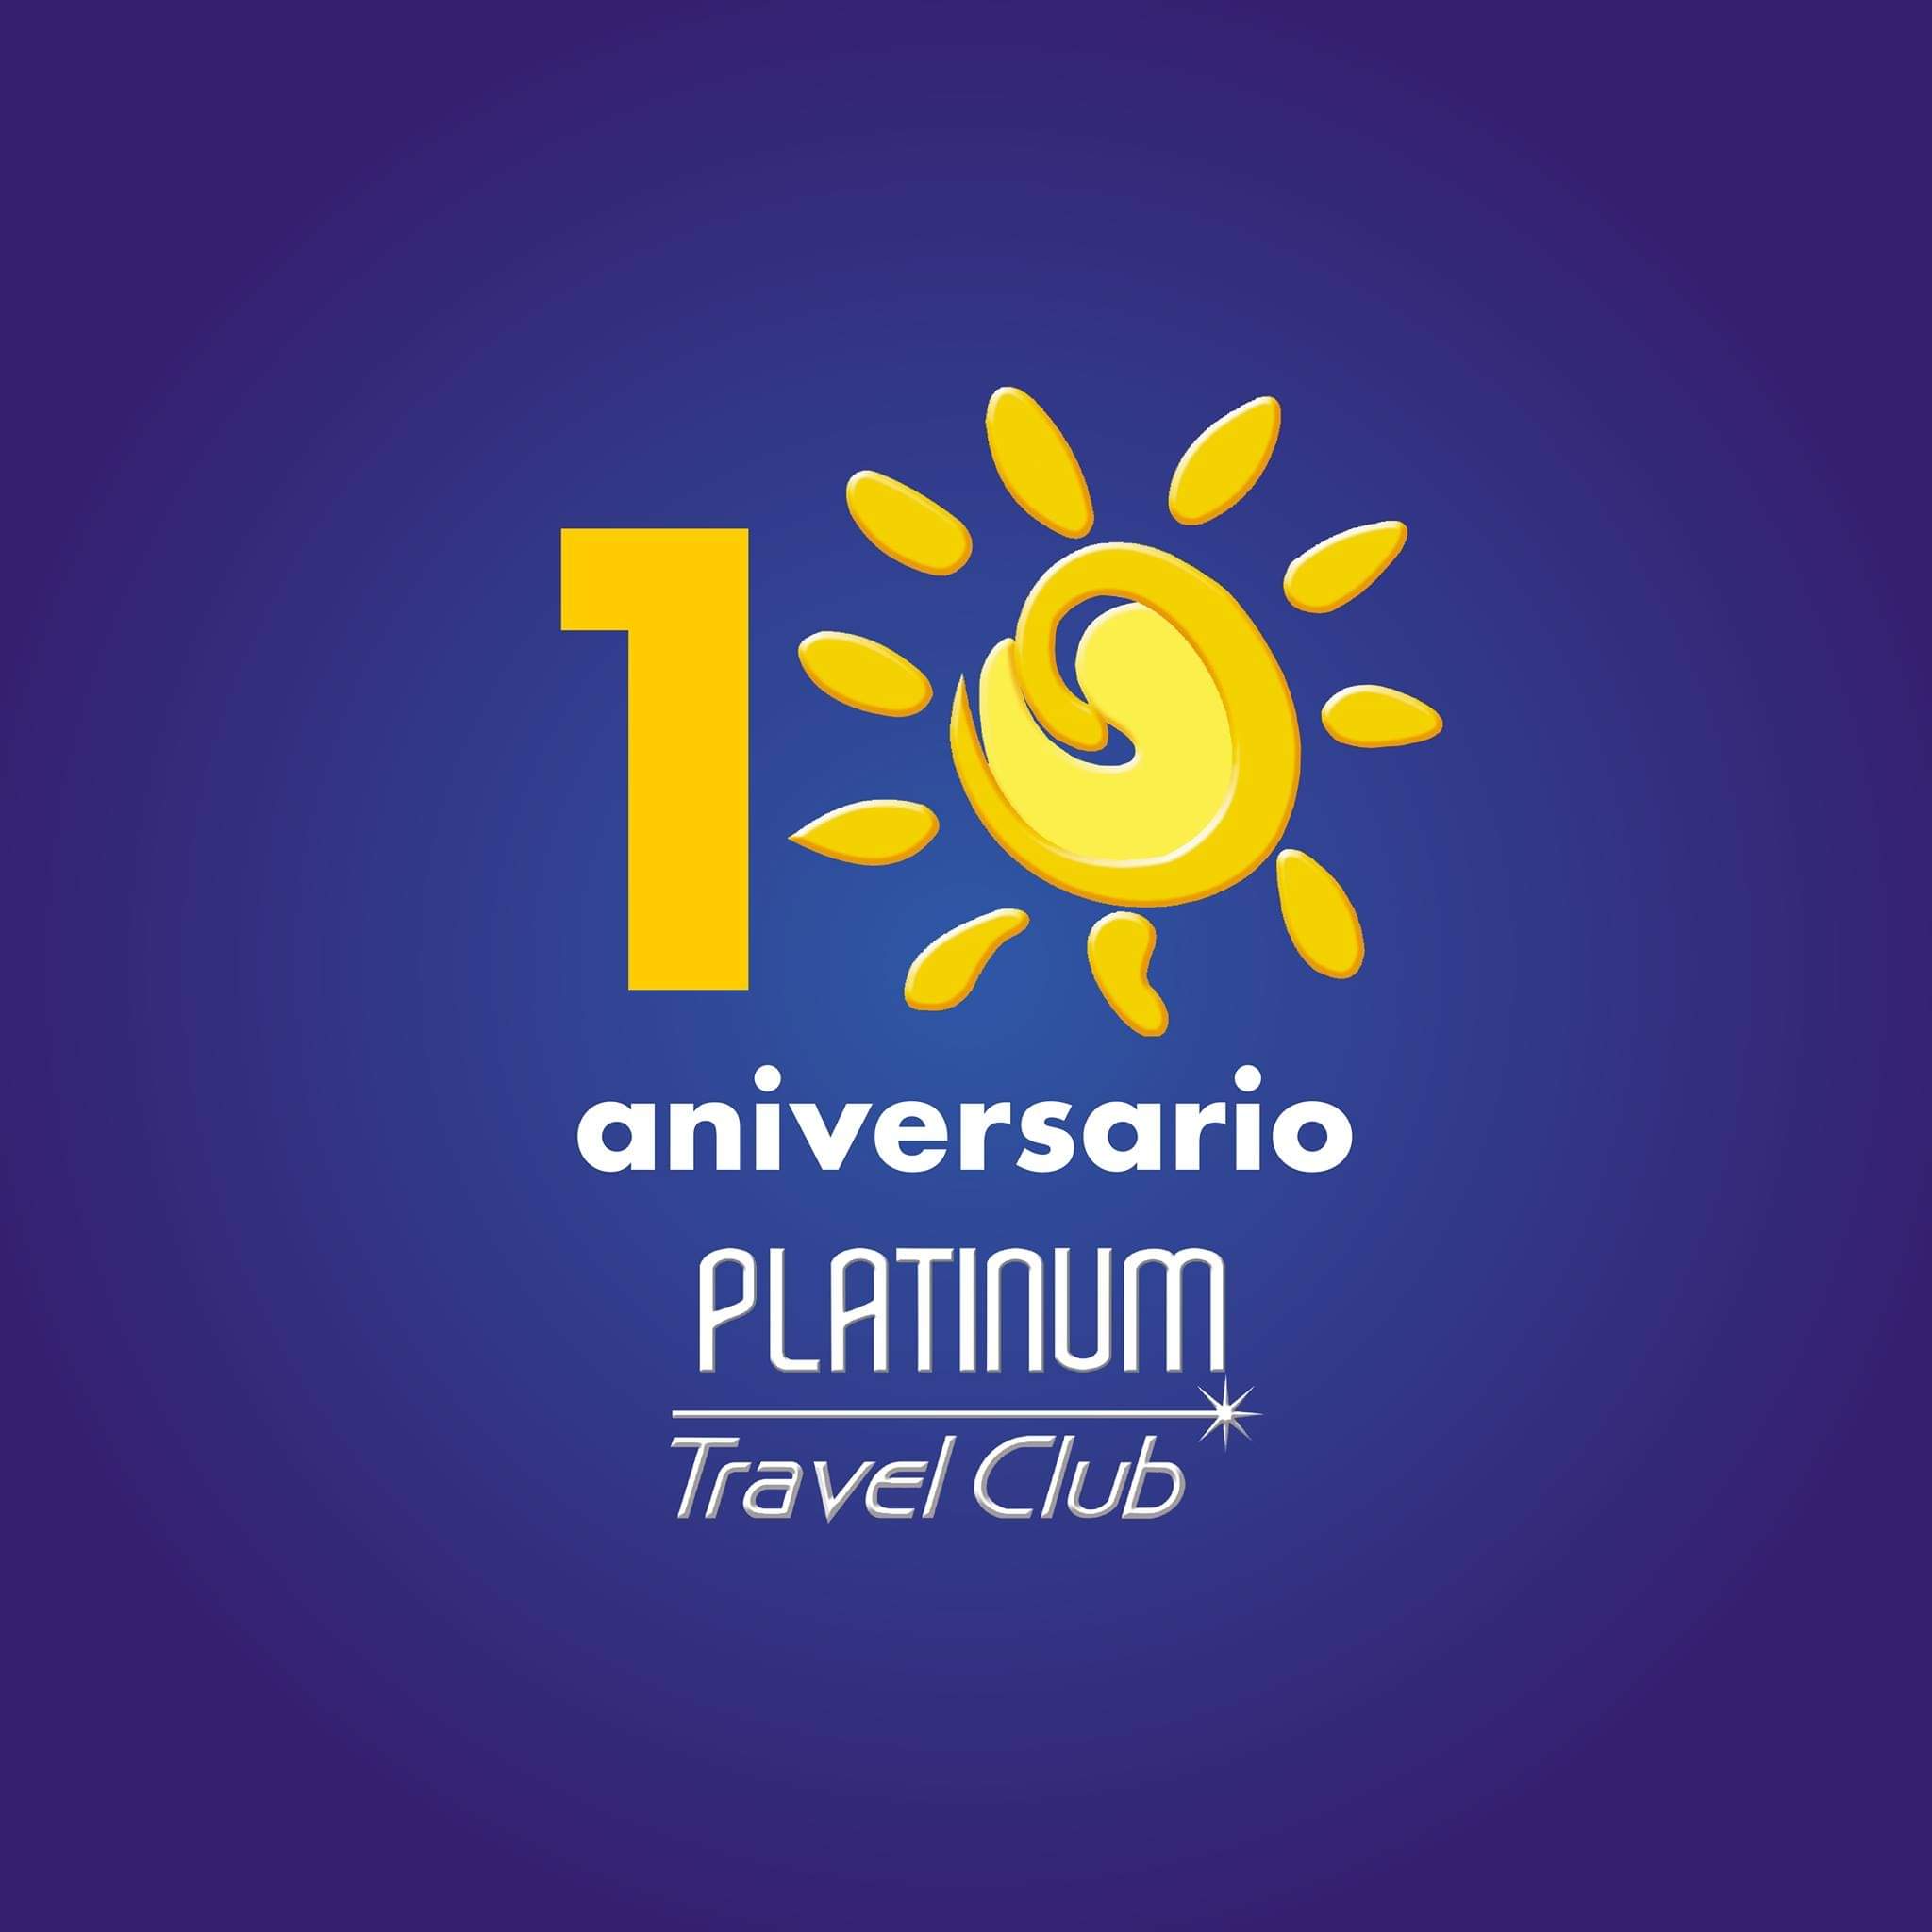 Platinum Travel Club / Imagen del perfil de FB